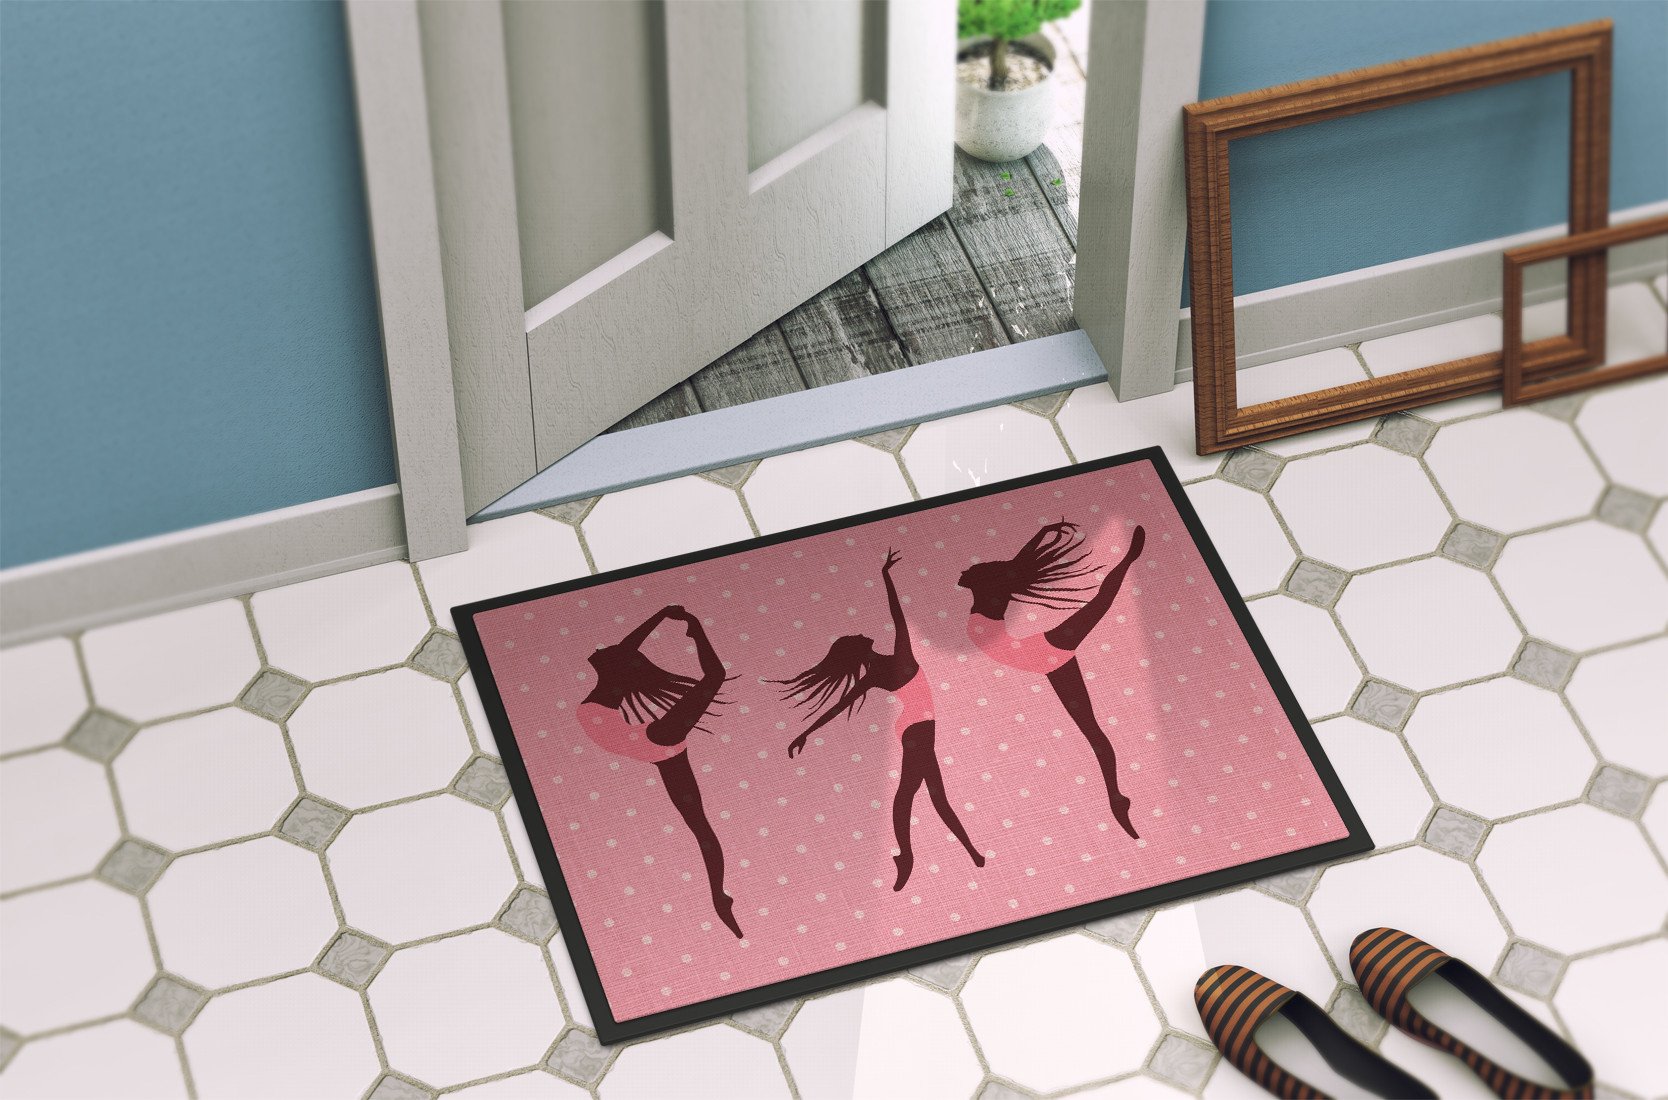 Dancers Linen Pink Polkadots Indoor or Outdoor Mat 24x36 BB5378JMAT by Caroline's Treasures